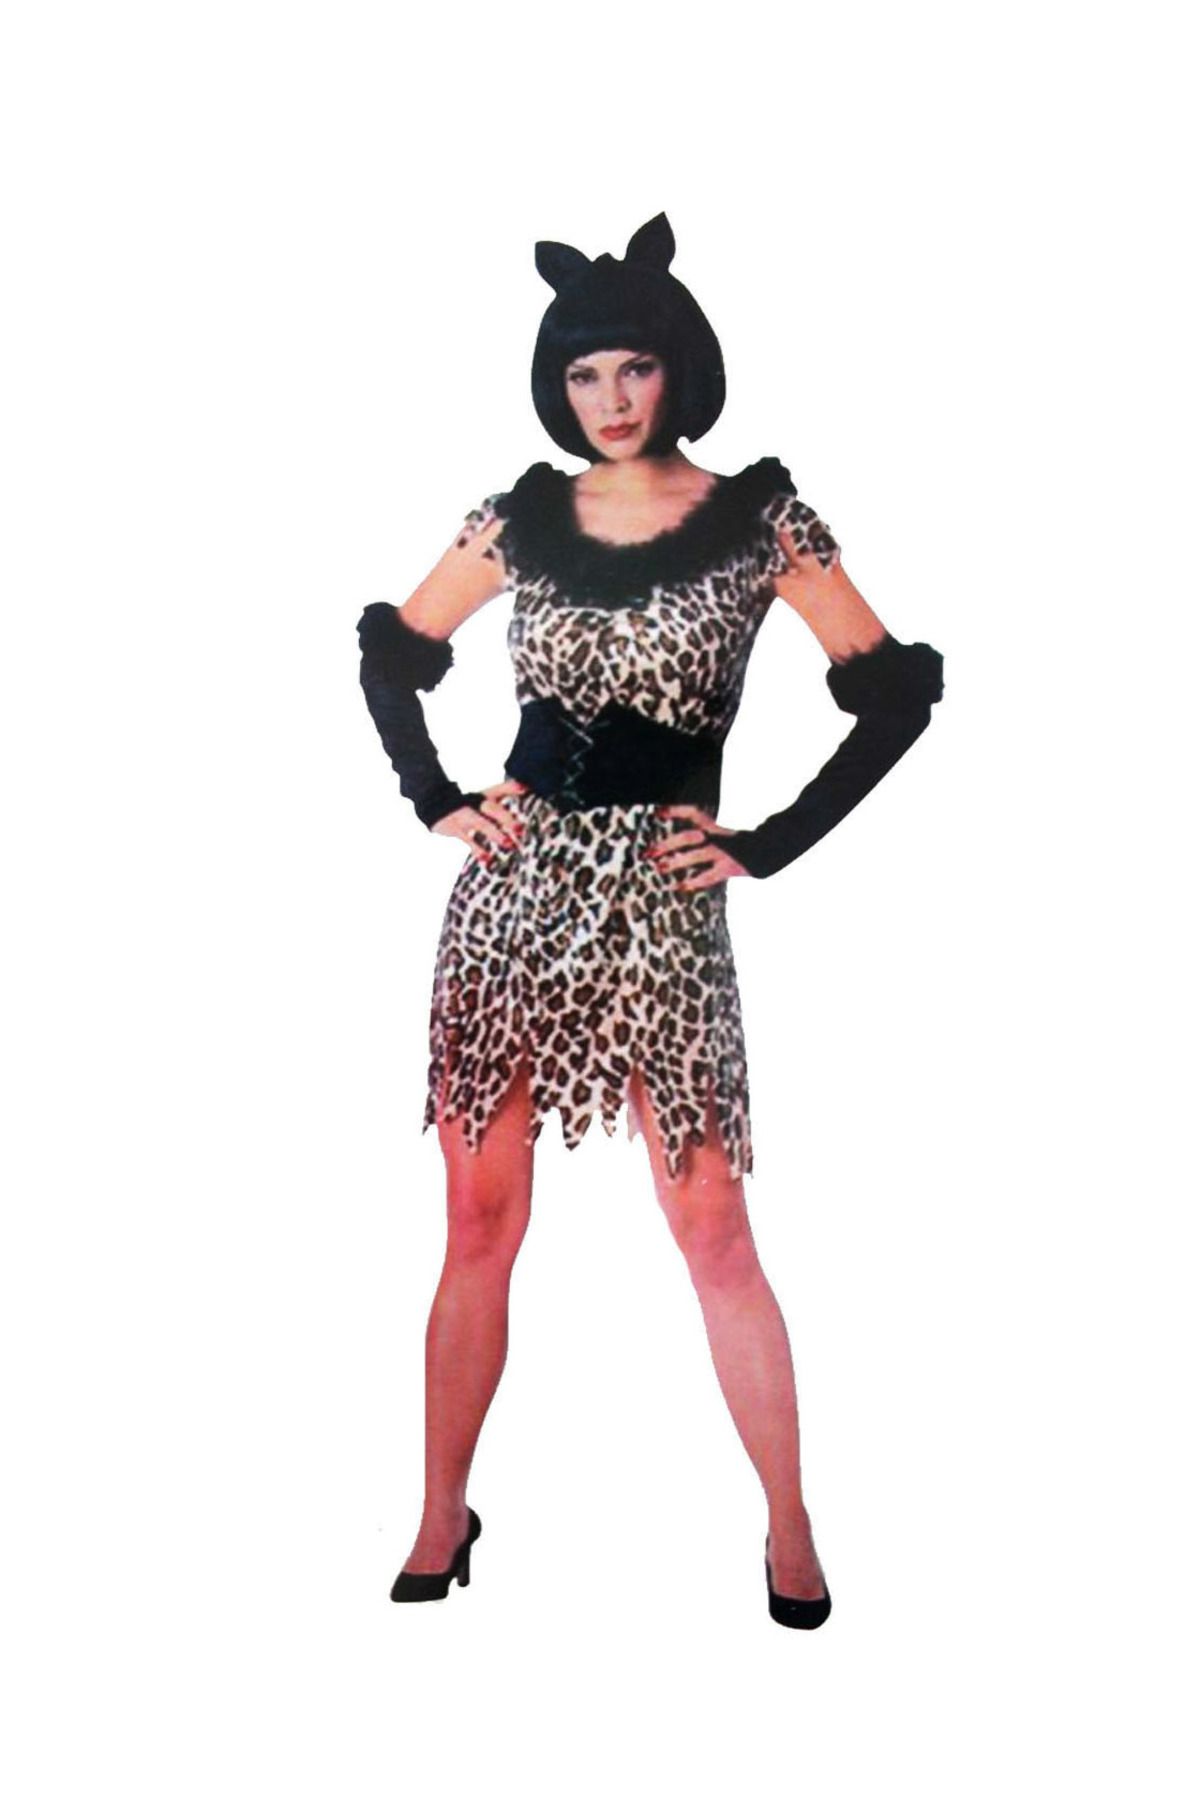 Astra Market Yetişkin Leopar Kostümü - Kedi Kız Kostümü - Taş Devri Kostümü (LİSİNYA)